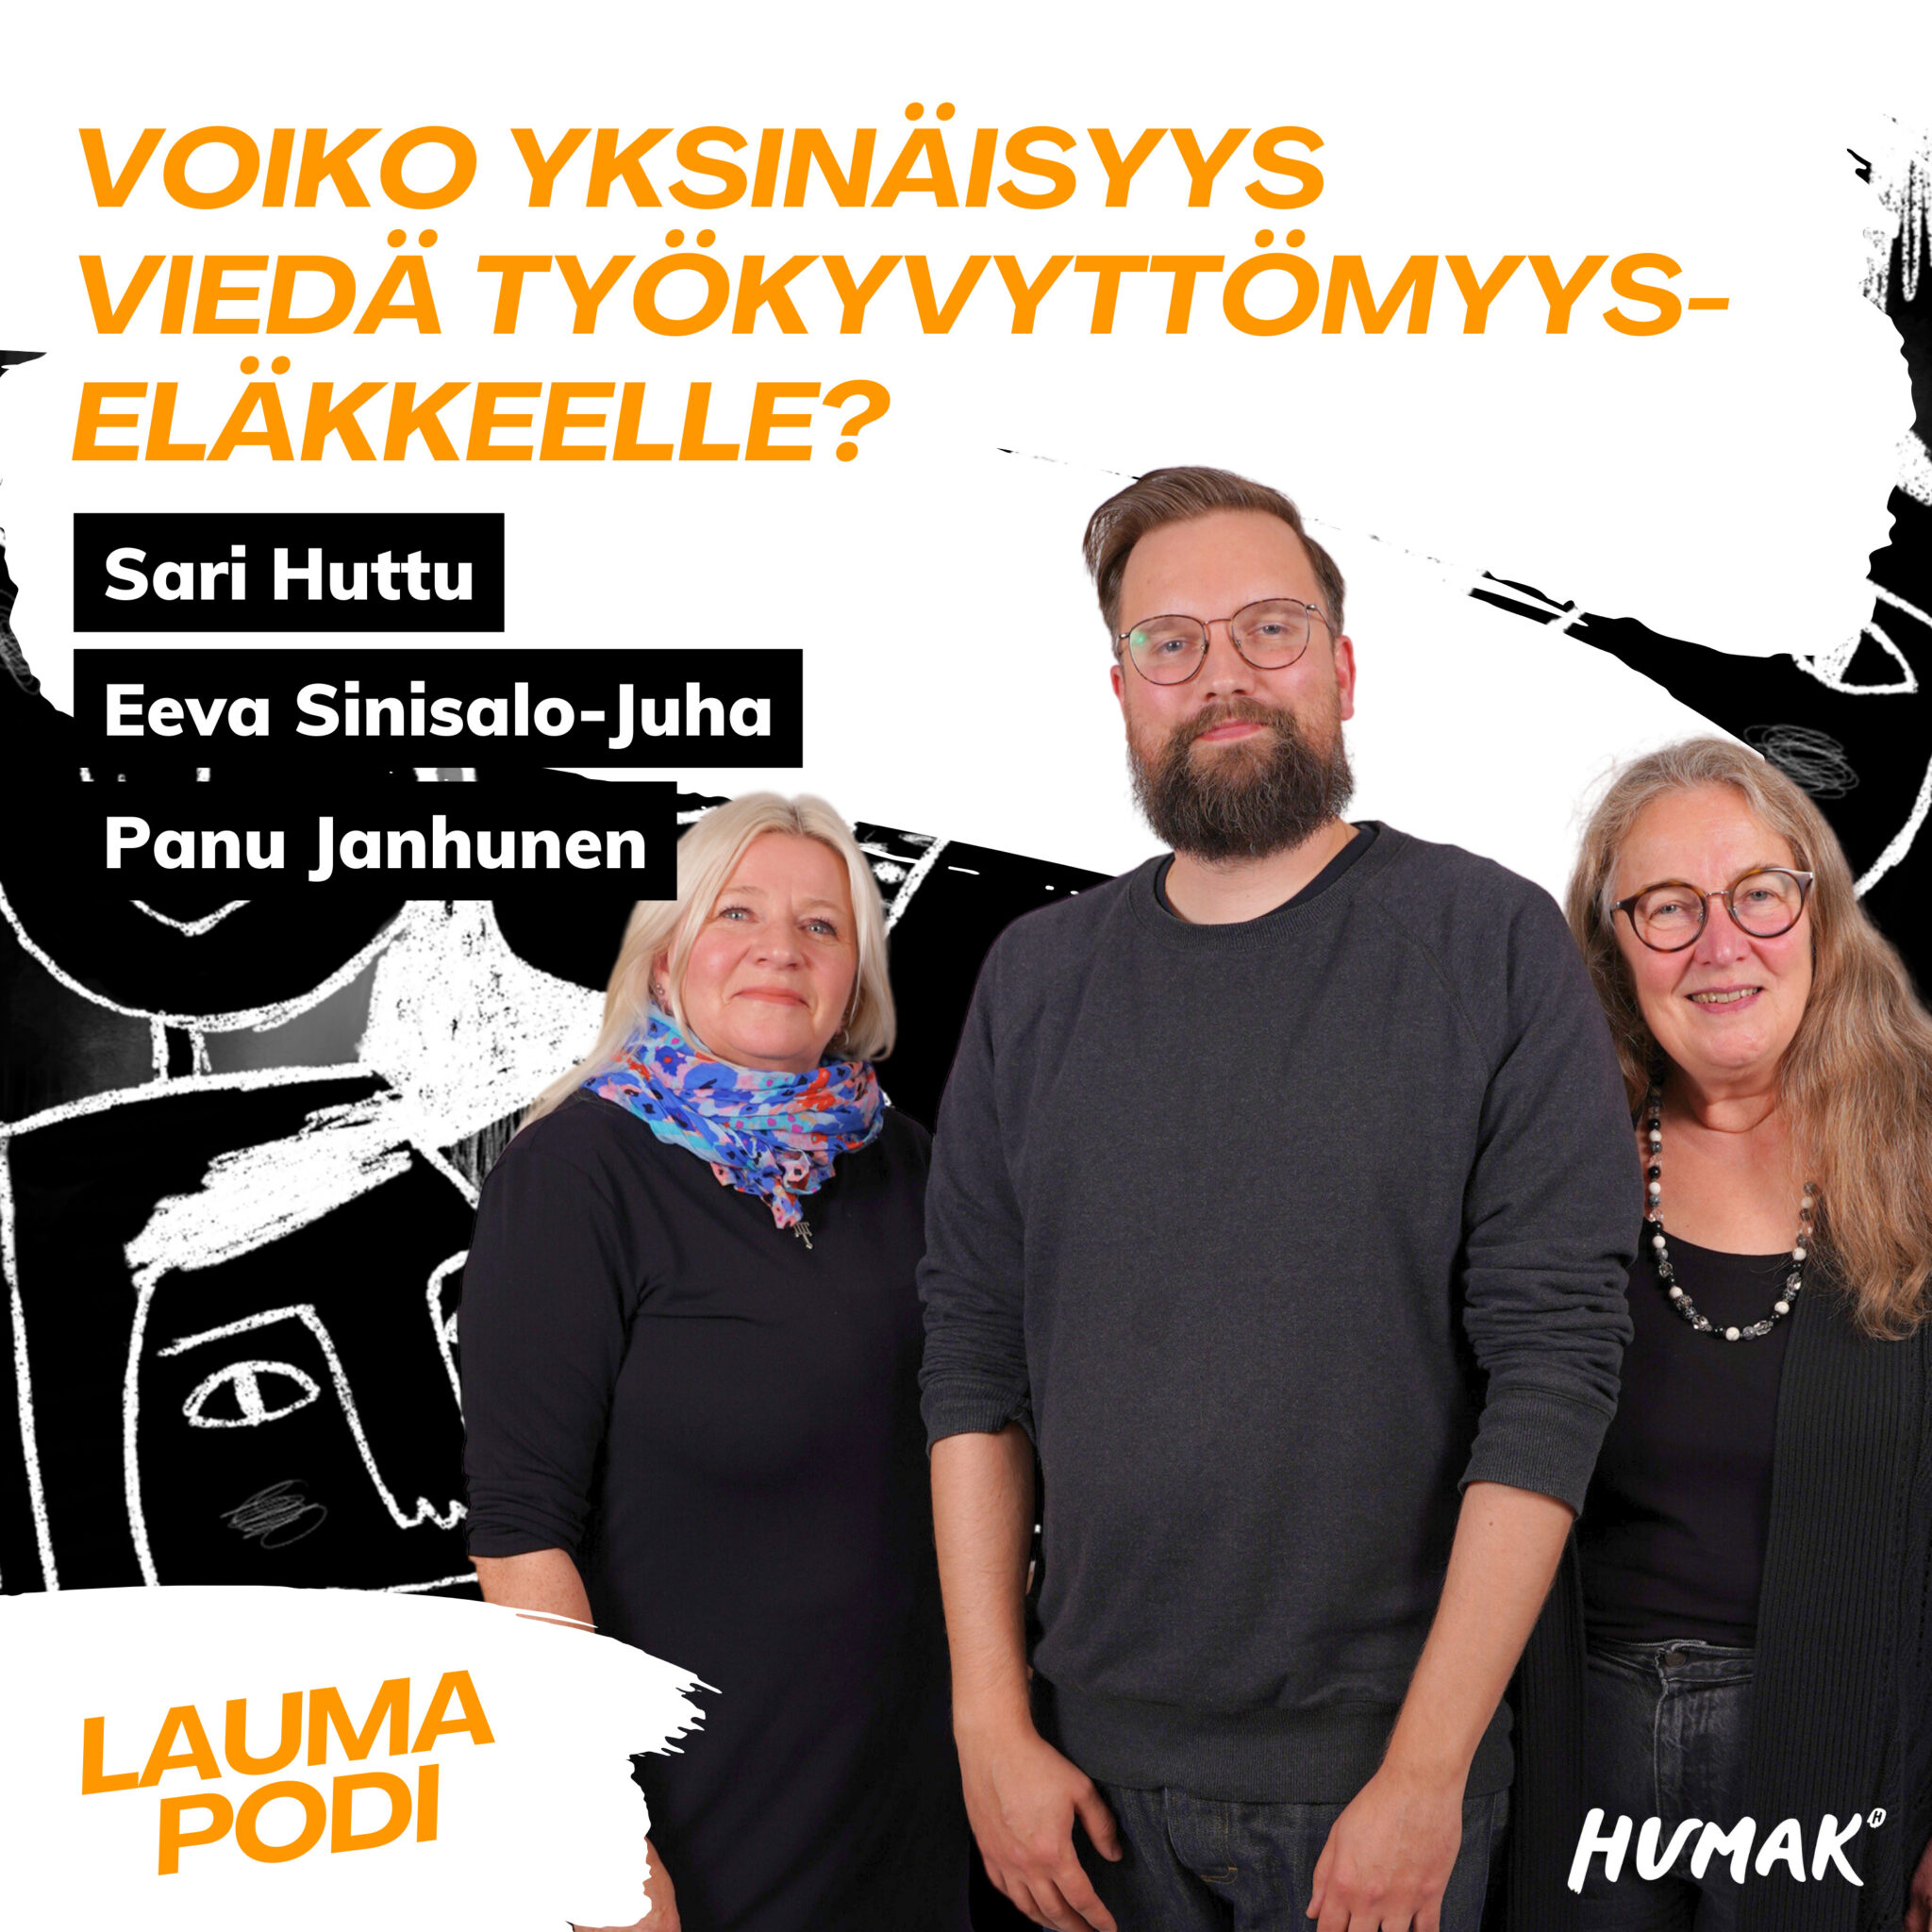 Kolme henkilöä poseeraa kameralle: Sari Huttu, Panu Janhunen ja Eeva Sinisalo-Juha. Jakson otsikko "Voiko yksinäisyys viedä työkyvyttömyyseläkkelle?" ja Laumapodi-logo sekä Humakin logo.